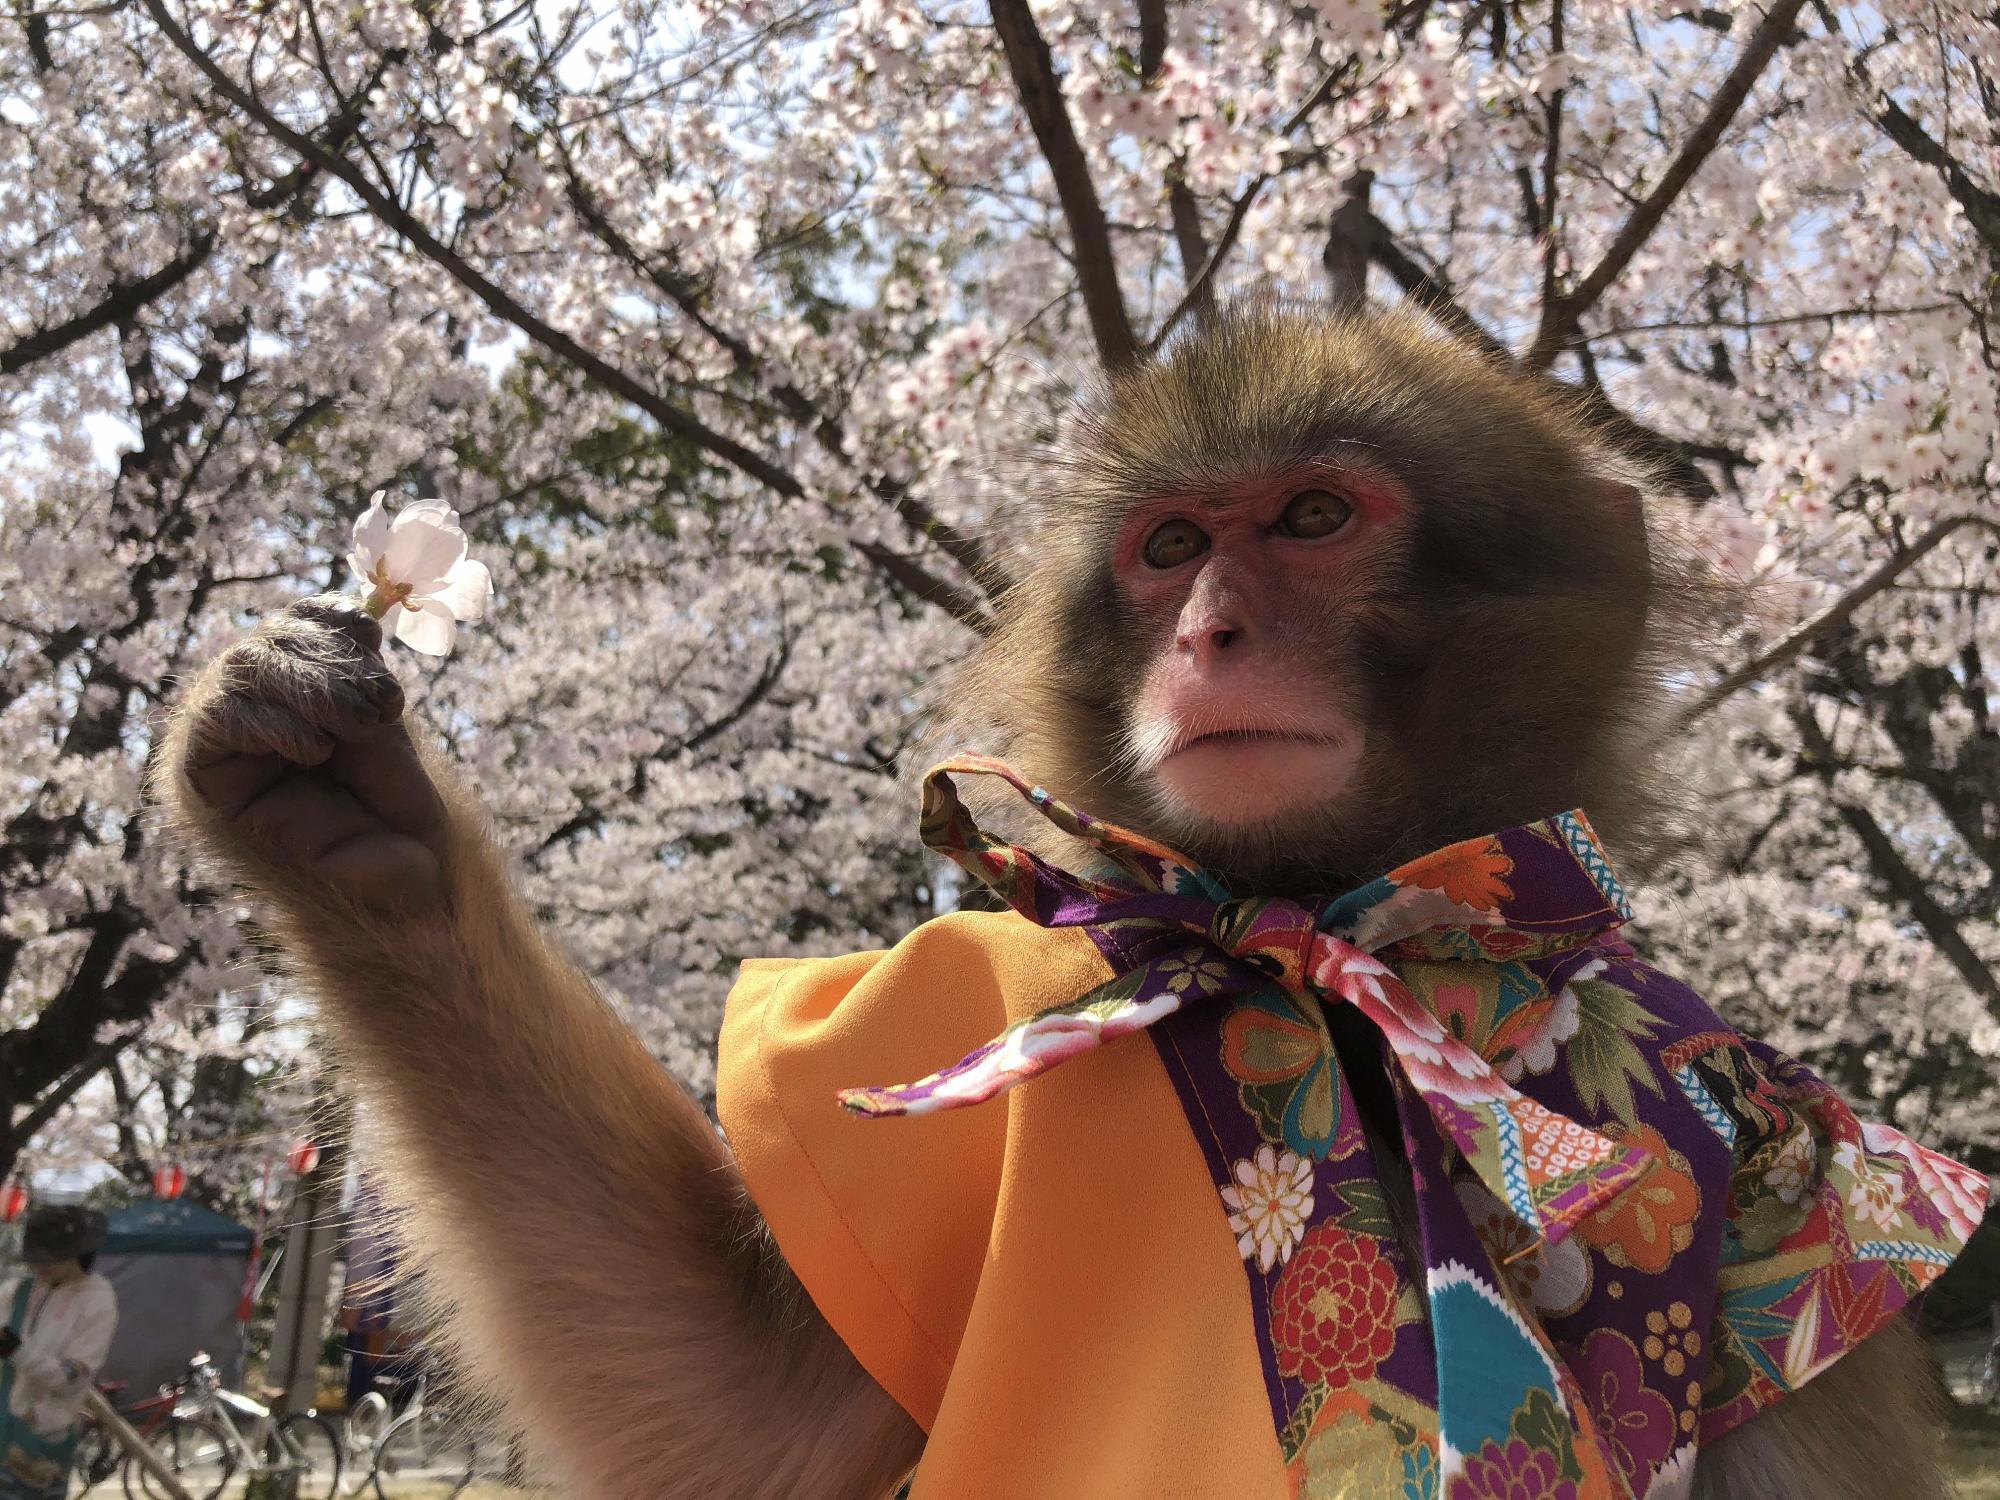 満開の桜をバックにオレンジ色のベストを着た猿が桜を手に持っている写真